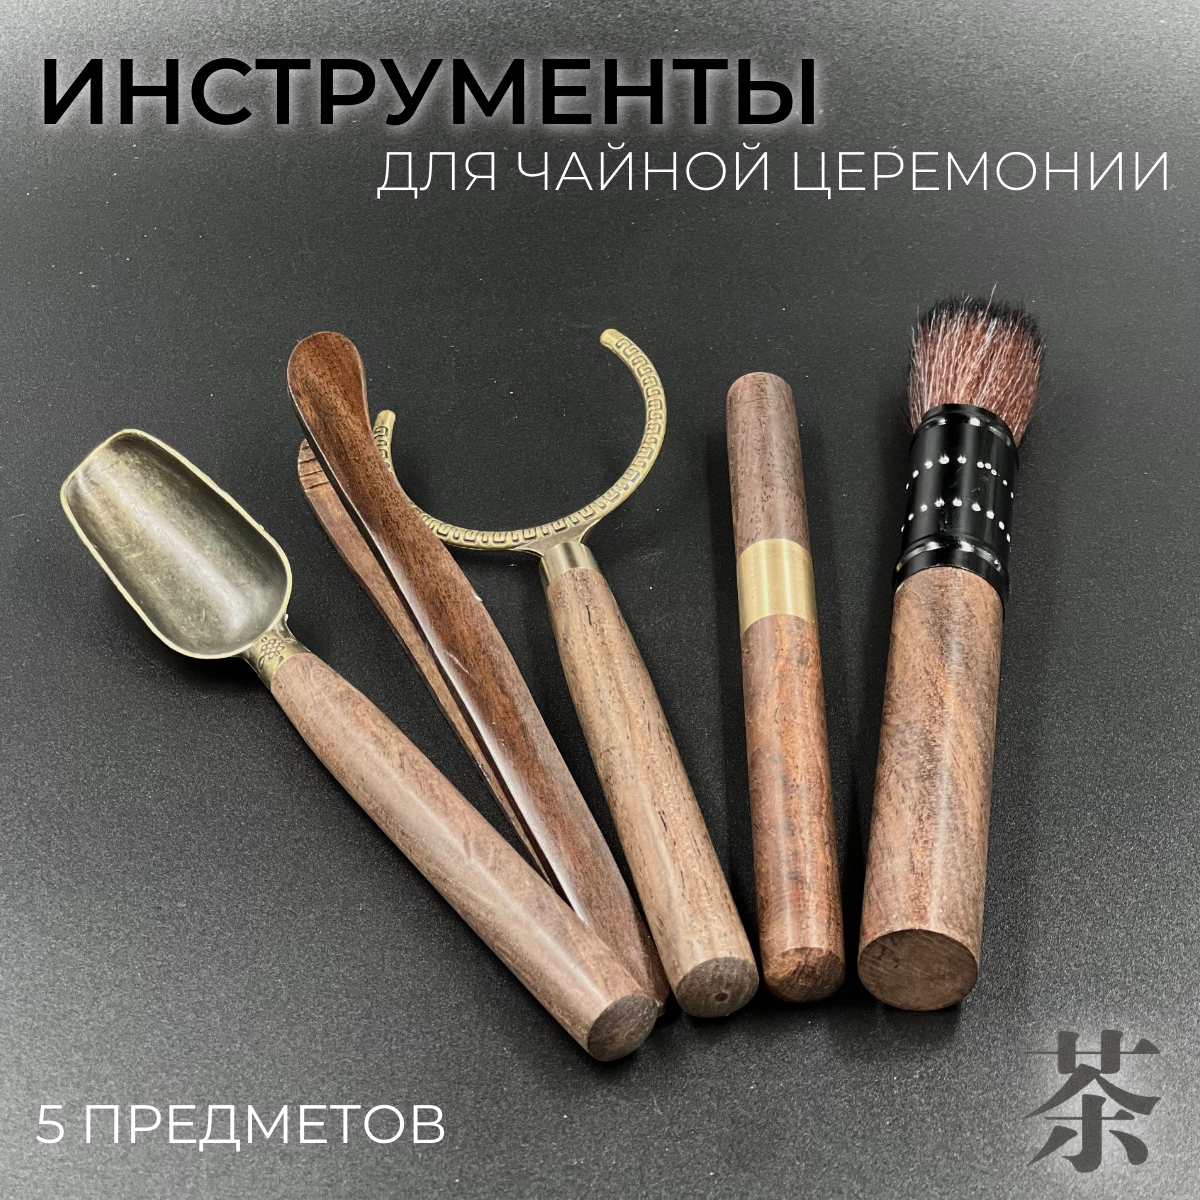 Набор для чайной церемонии инструменты